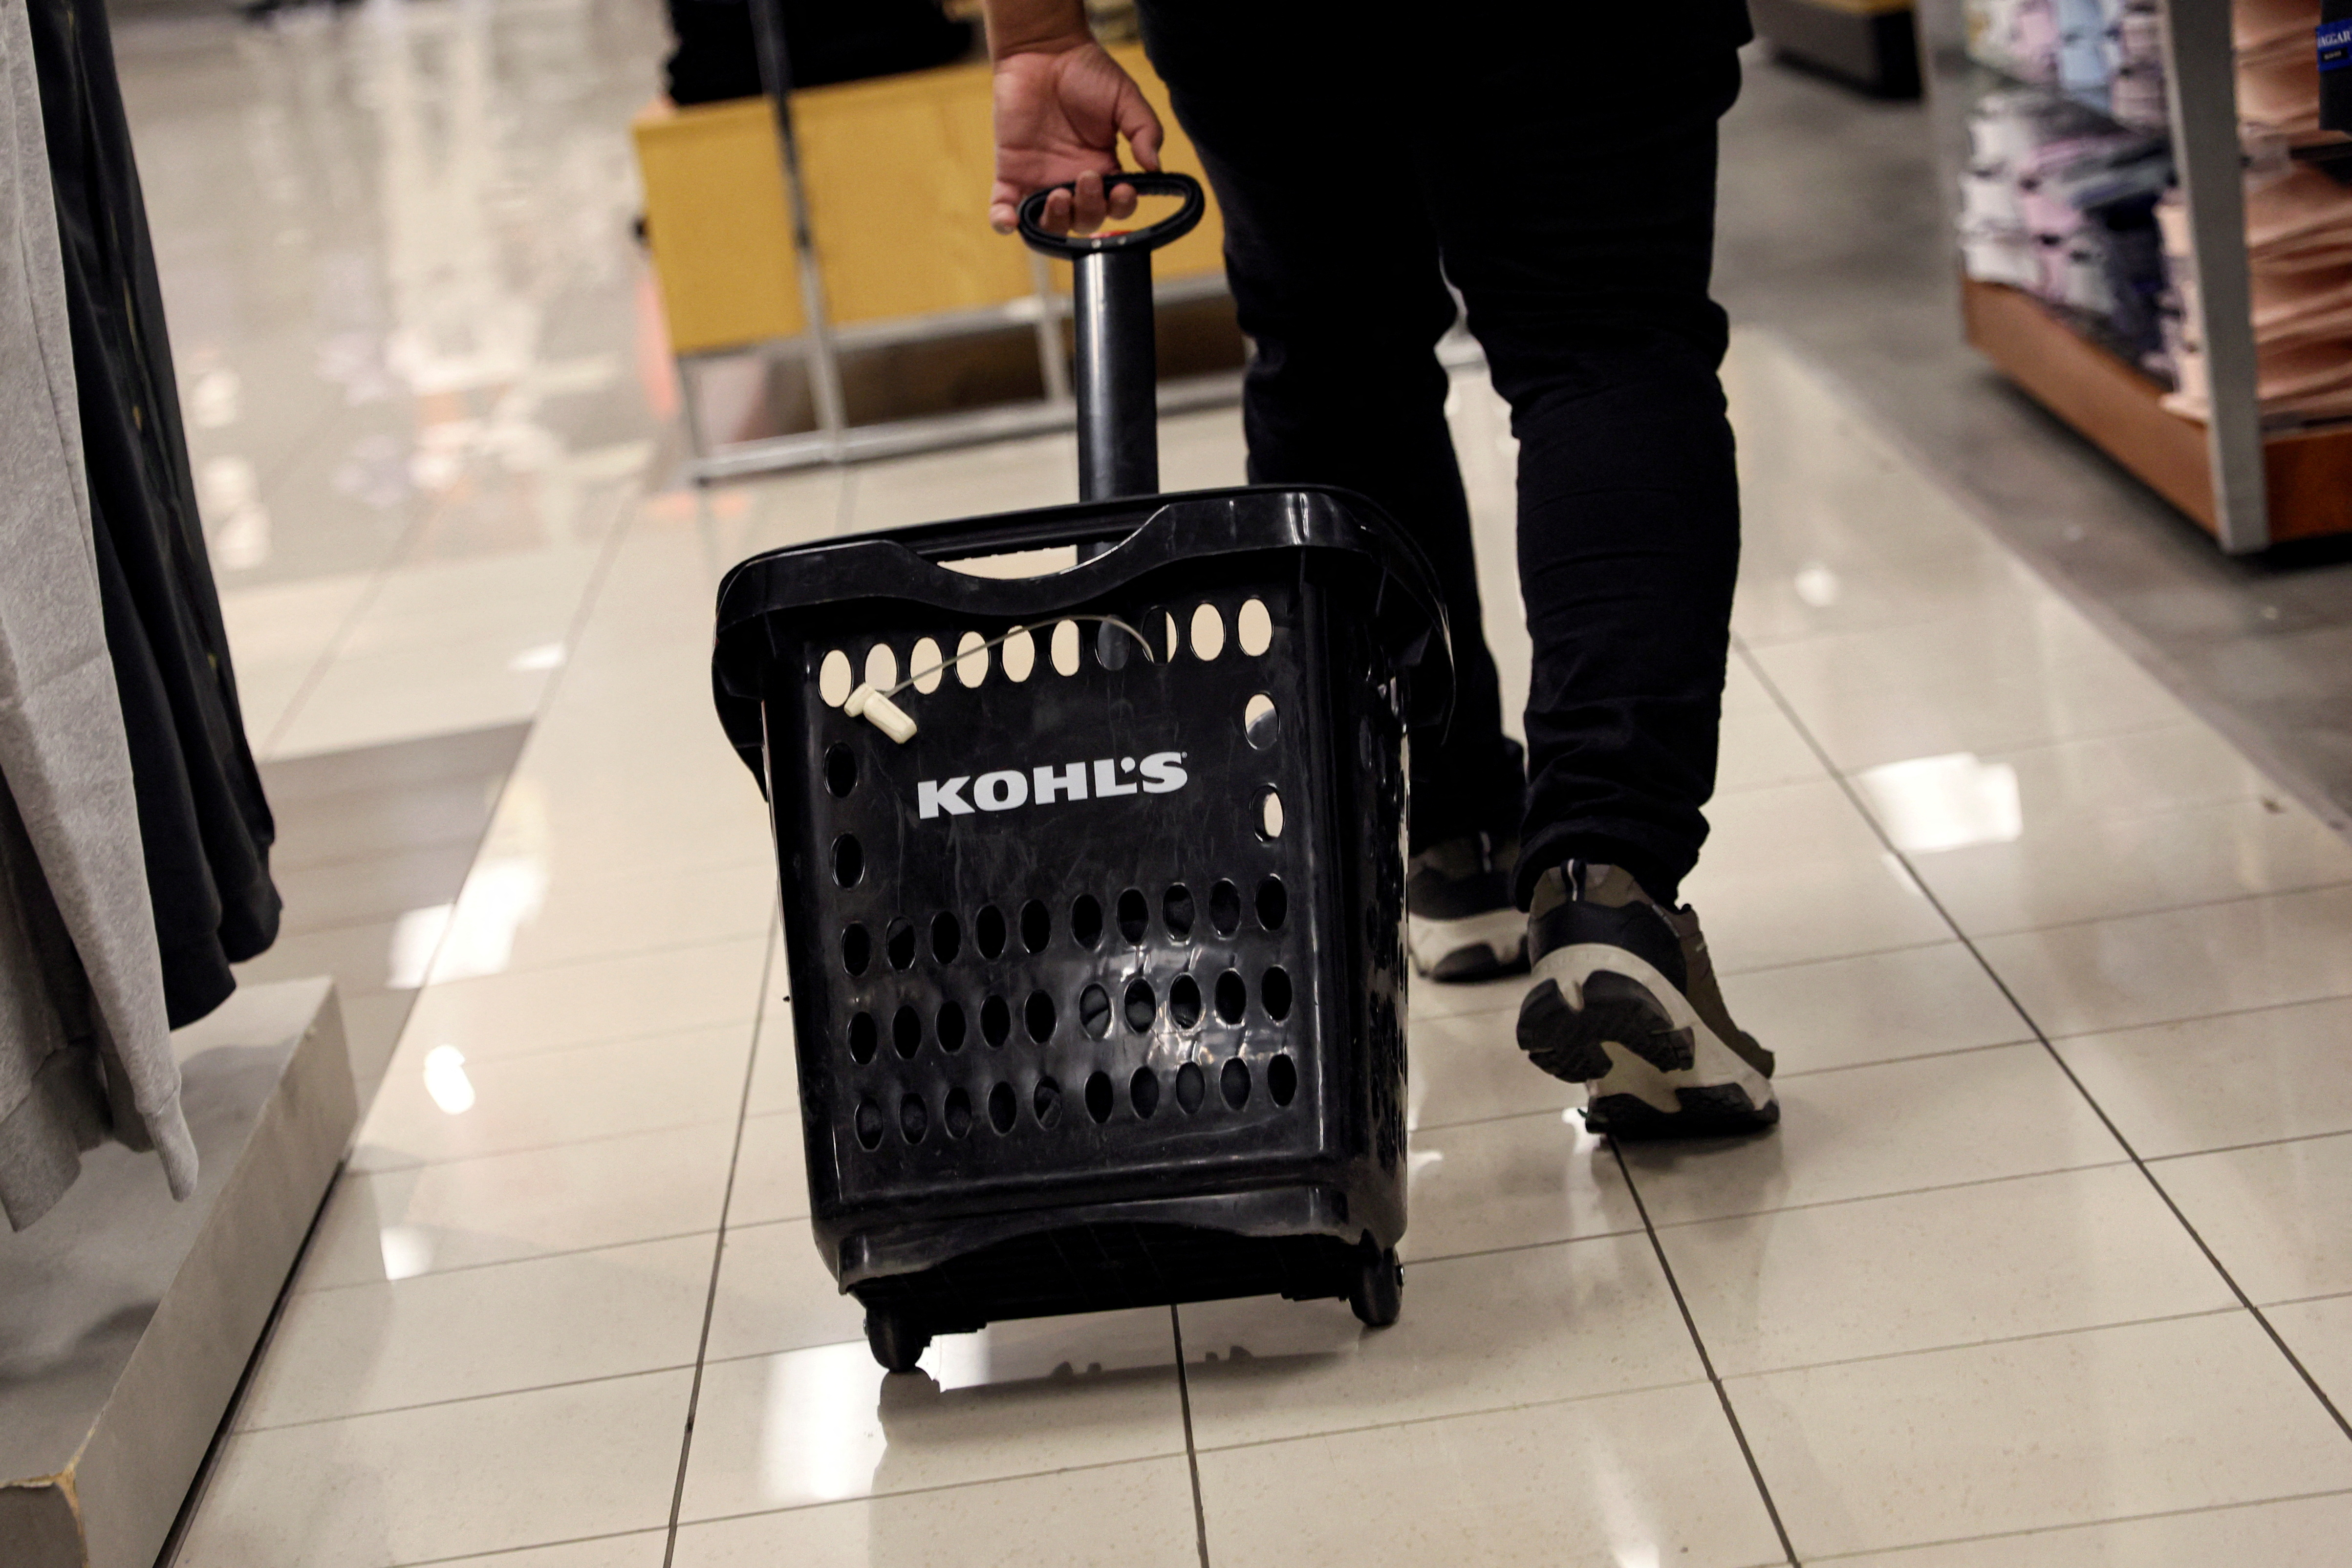 Kohl's raises full-year net sales forecast